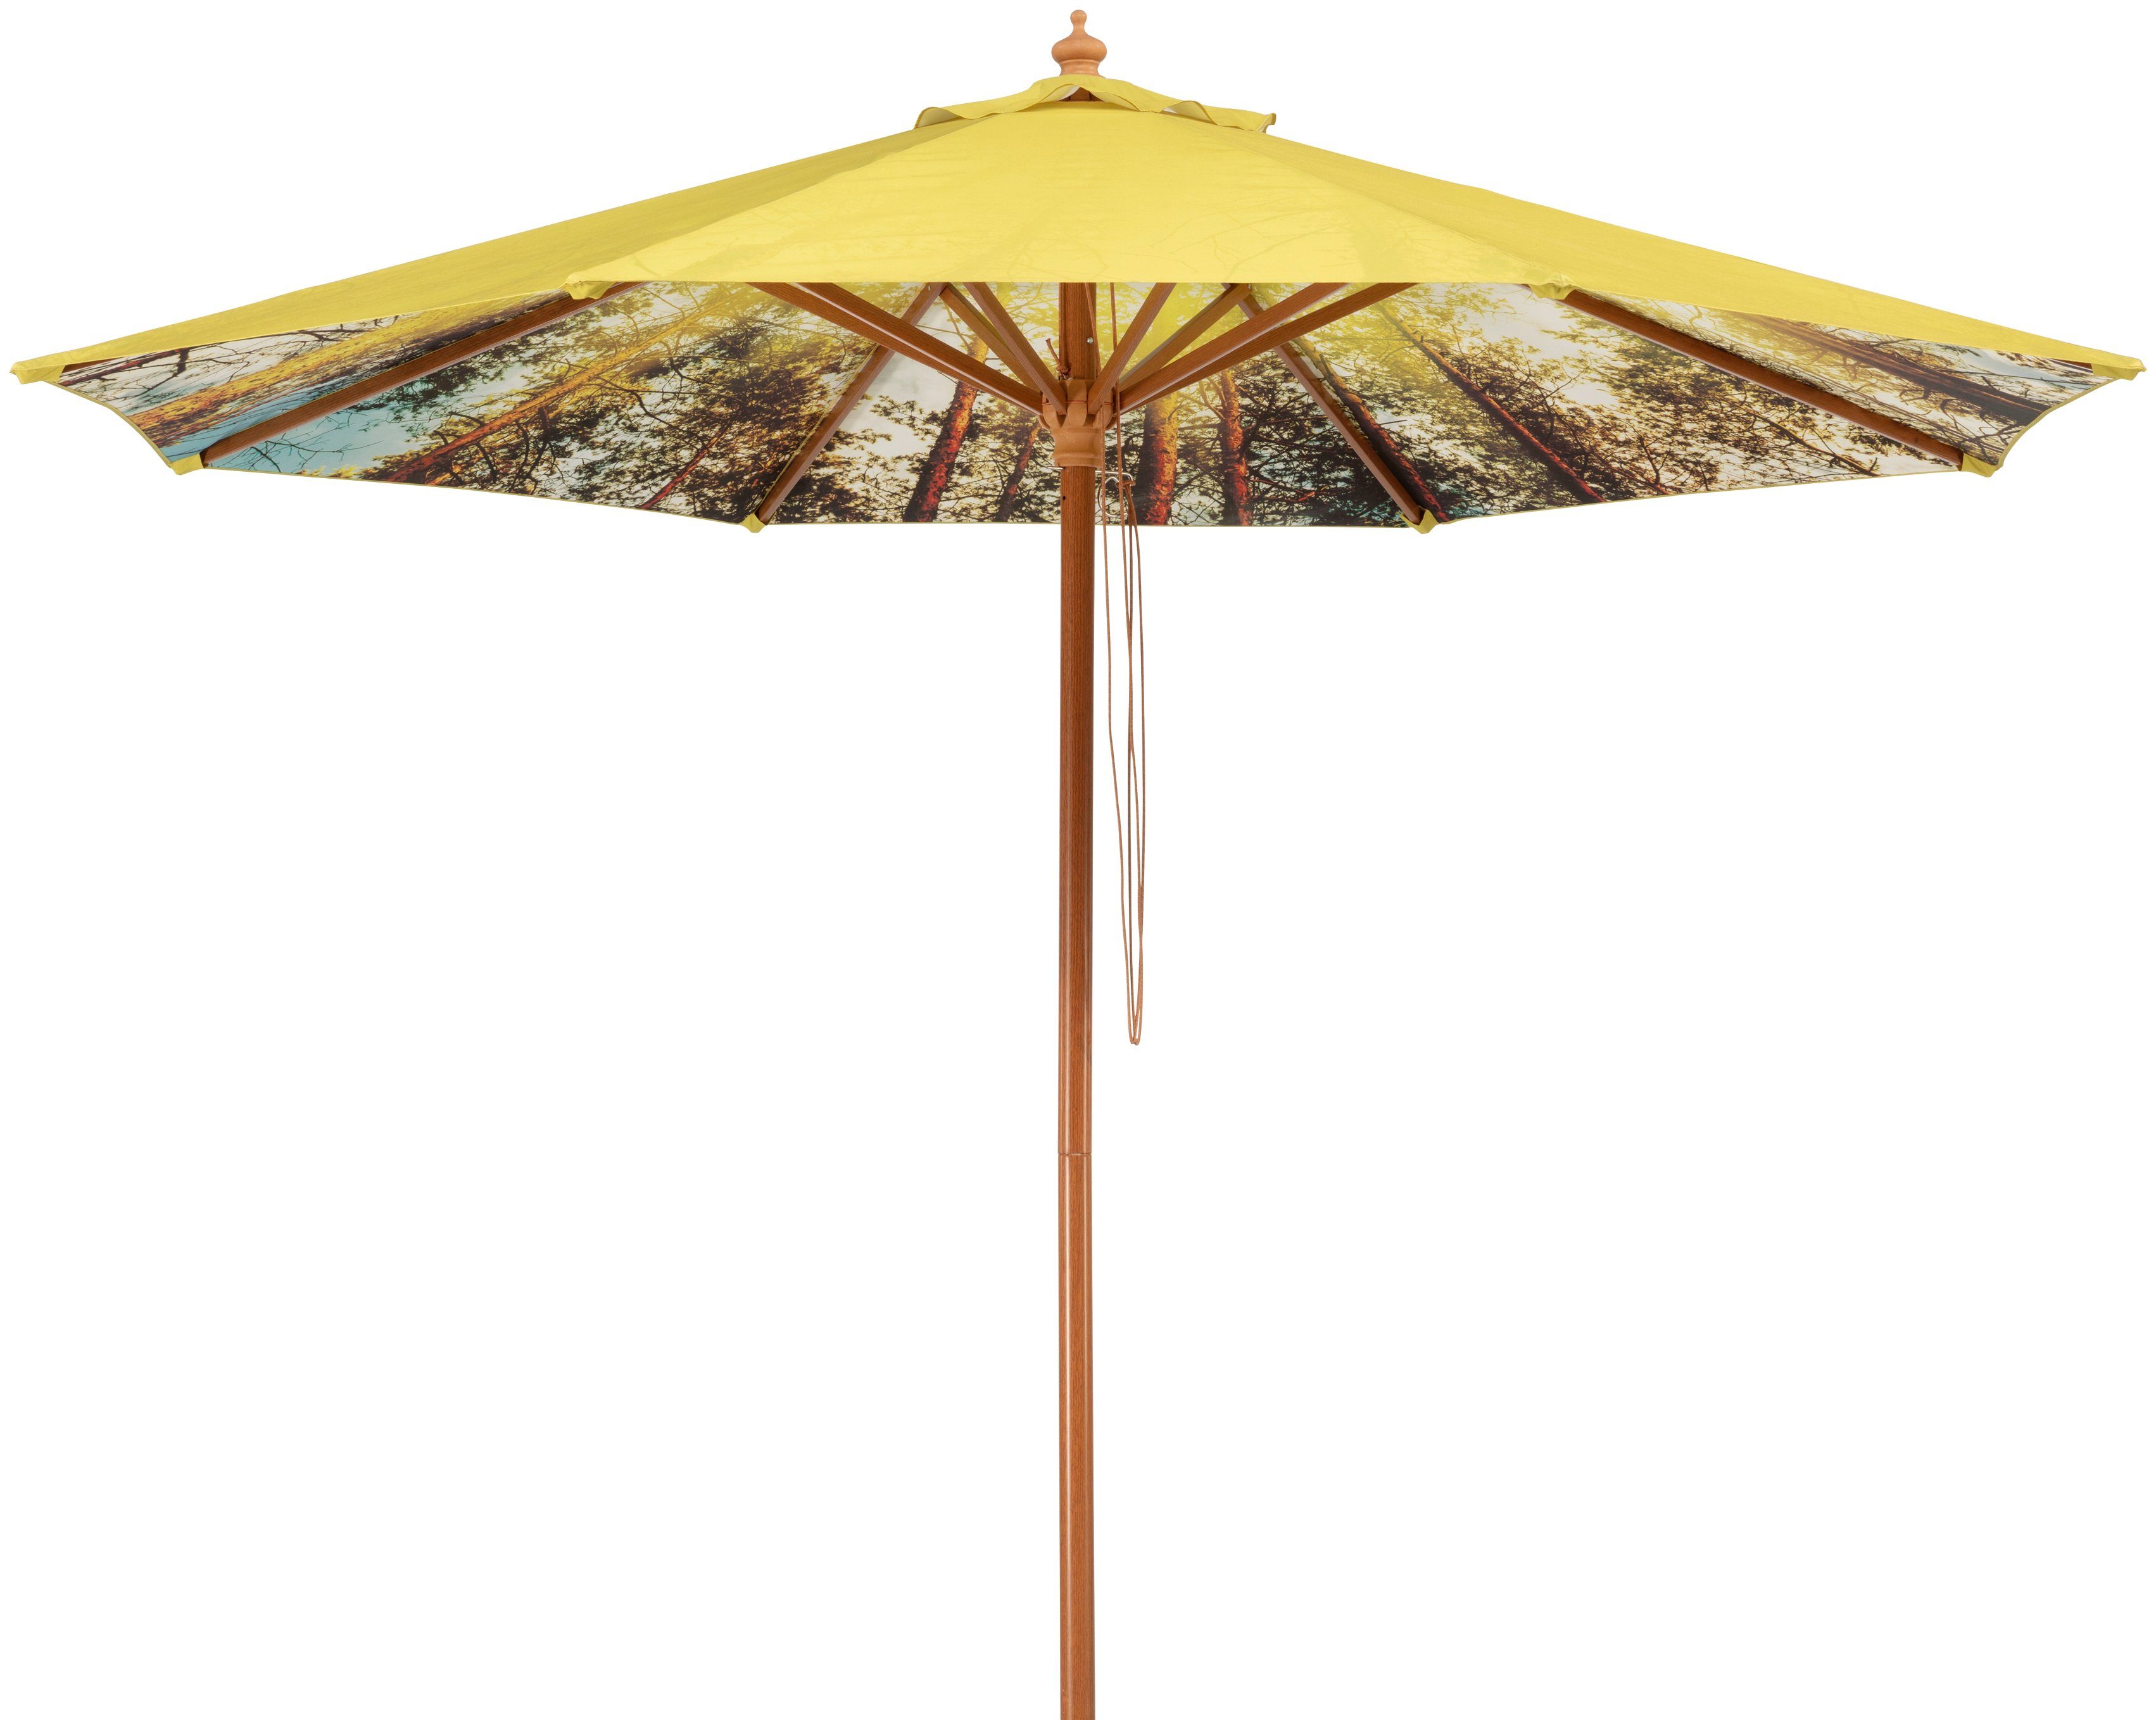 Schneider Зонты Marktschirm Malaga Forest, Durchmesser 300 cm, Innen mit Waldmotiv, rund, ohne Schirmständer